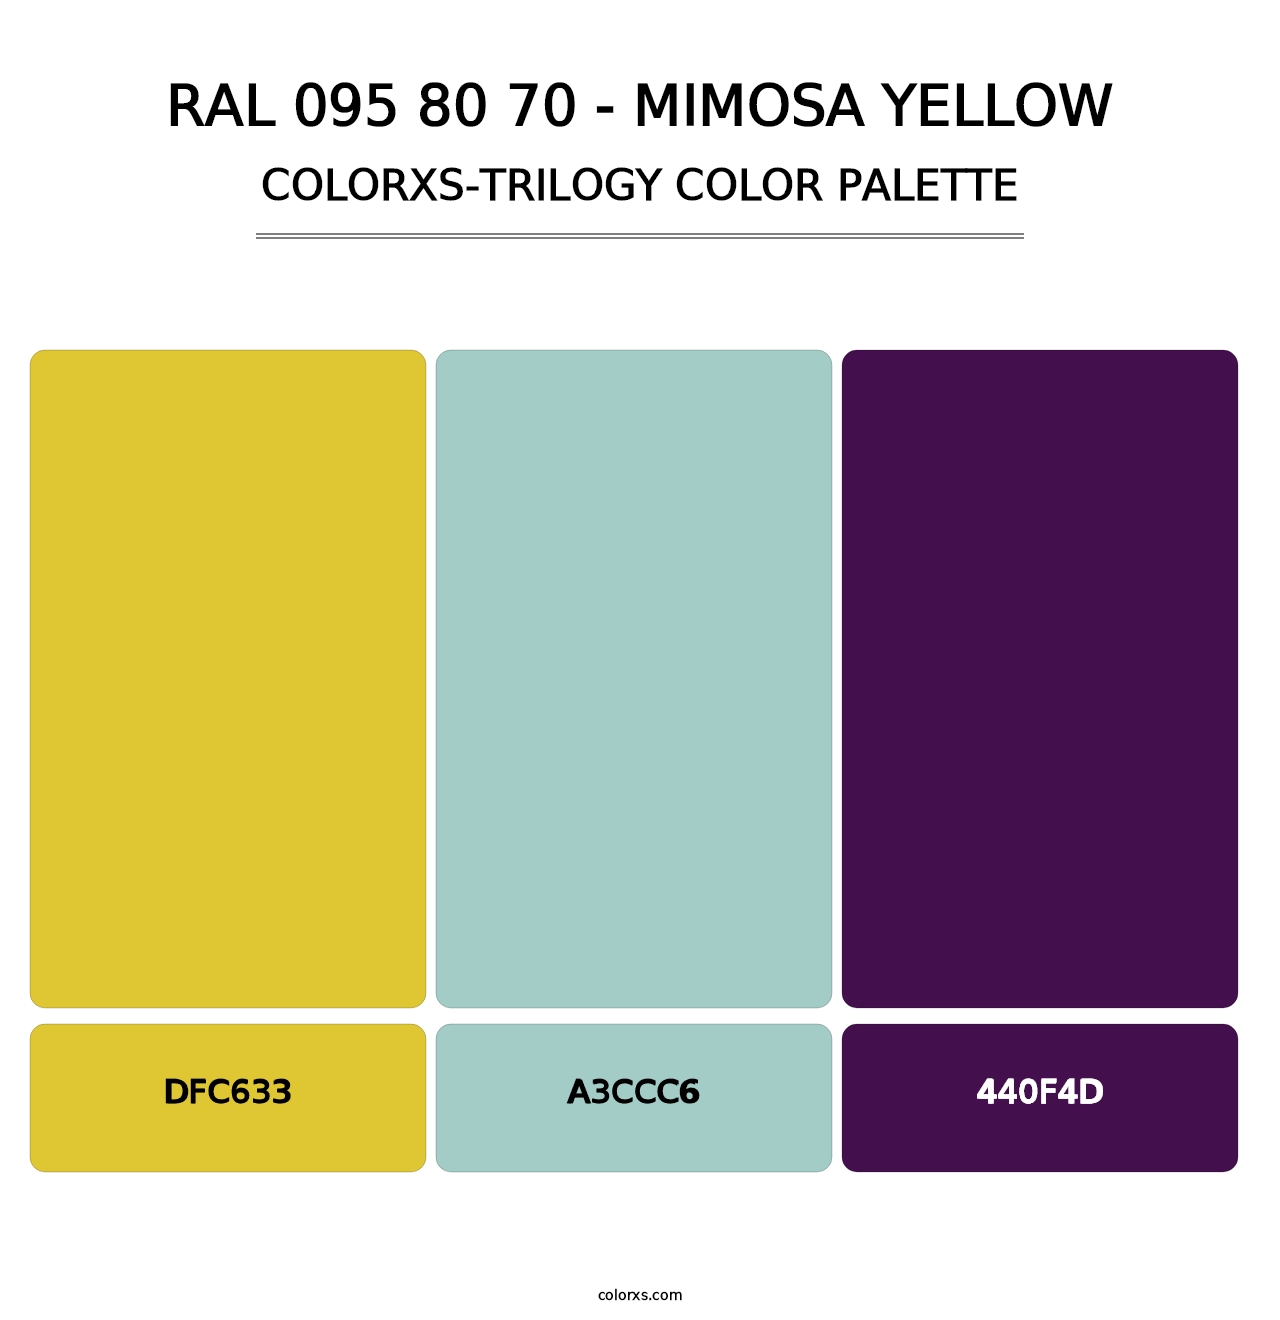 RAL 095 80 70 - Mimosa Yellow - Colorxs Trilogy Palette